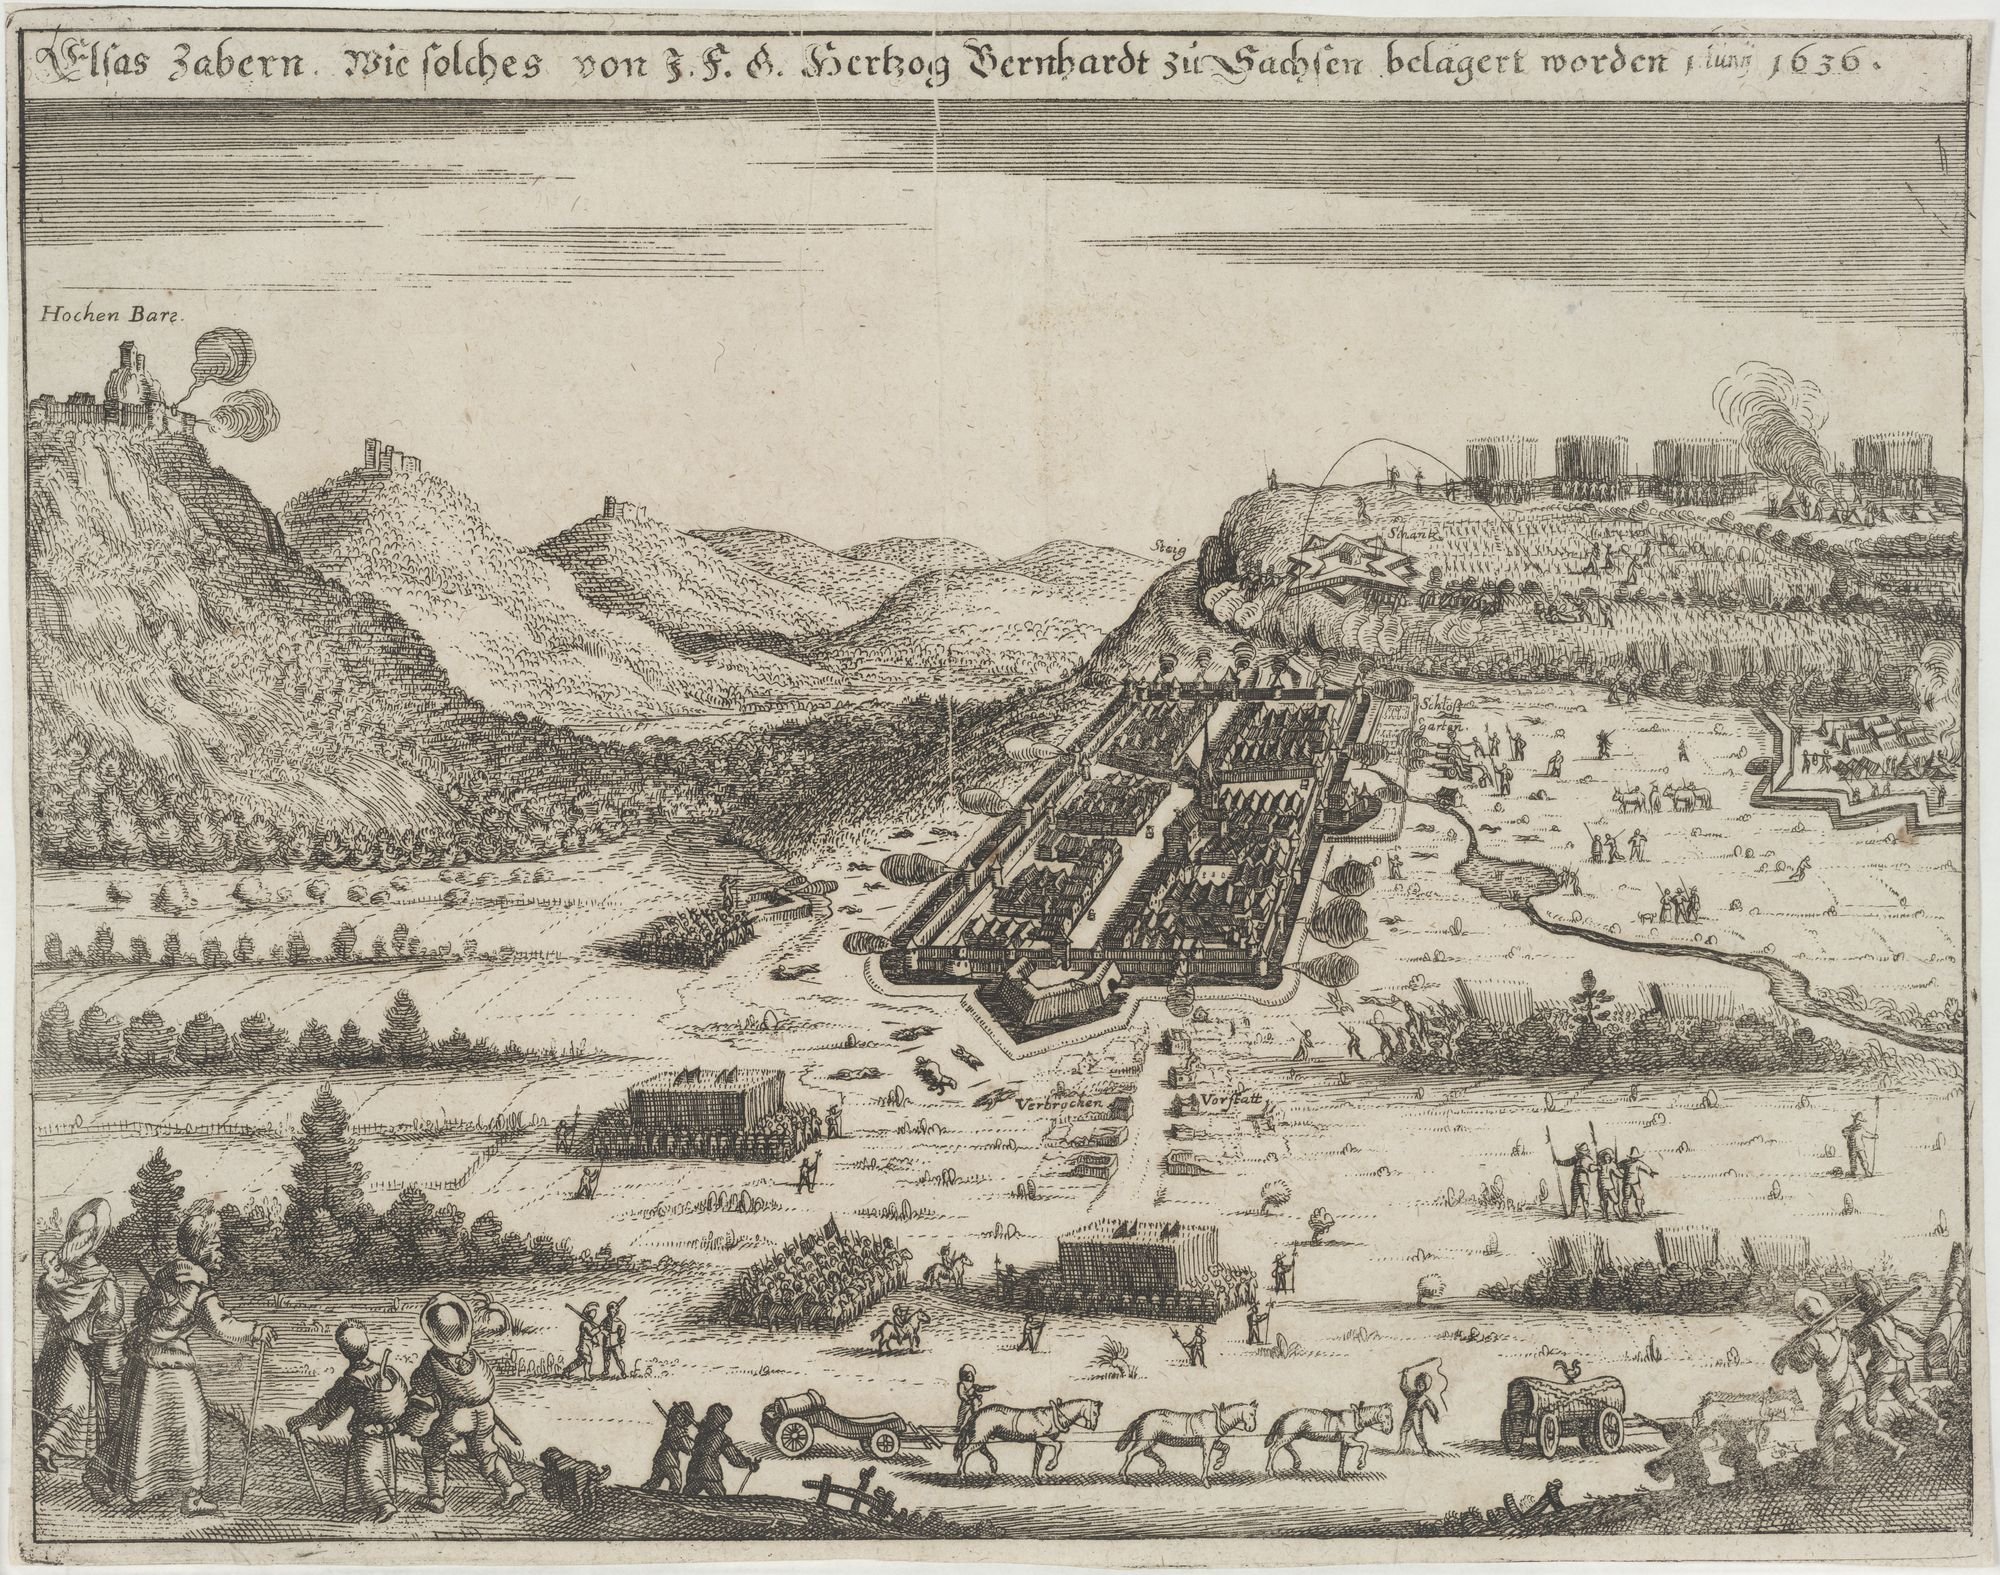 Elsas Zabern. Wie solches von J. F. G. Hertzog Bernhardt zu Sachsen belagert worden 1 Iuny 1636. (Kulturstiftung Sachsen-Anhalt Public Domain Mark)